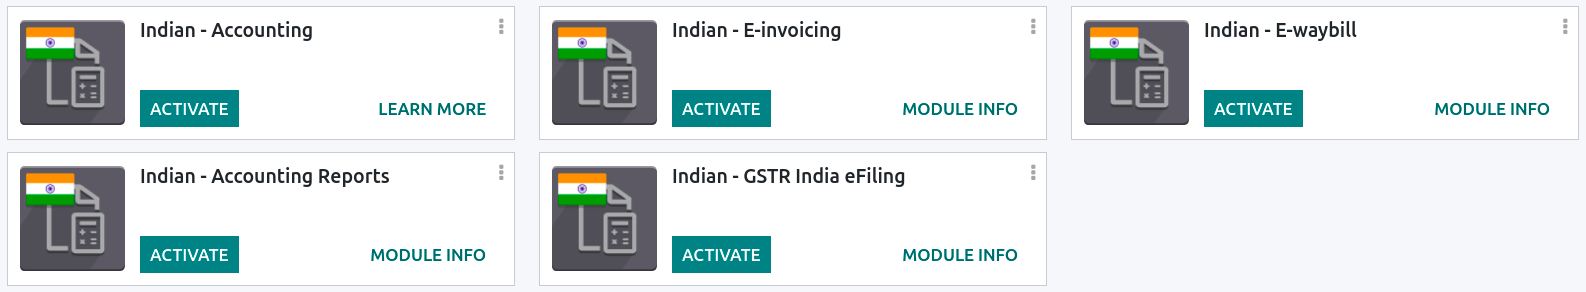 Indian localization modules